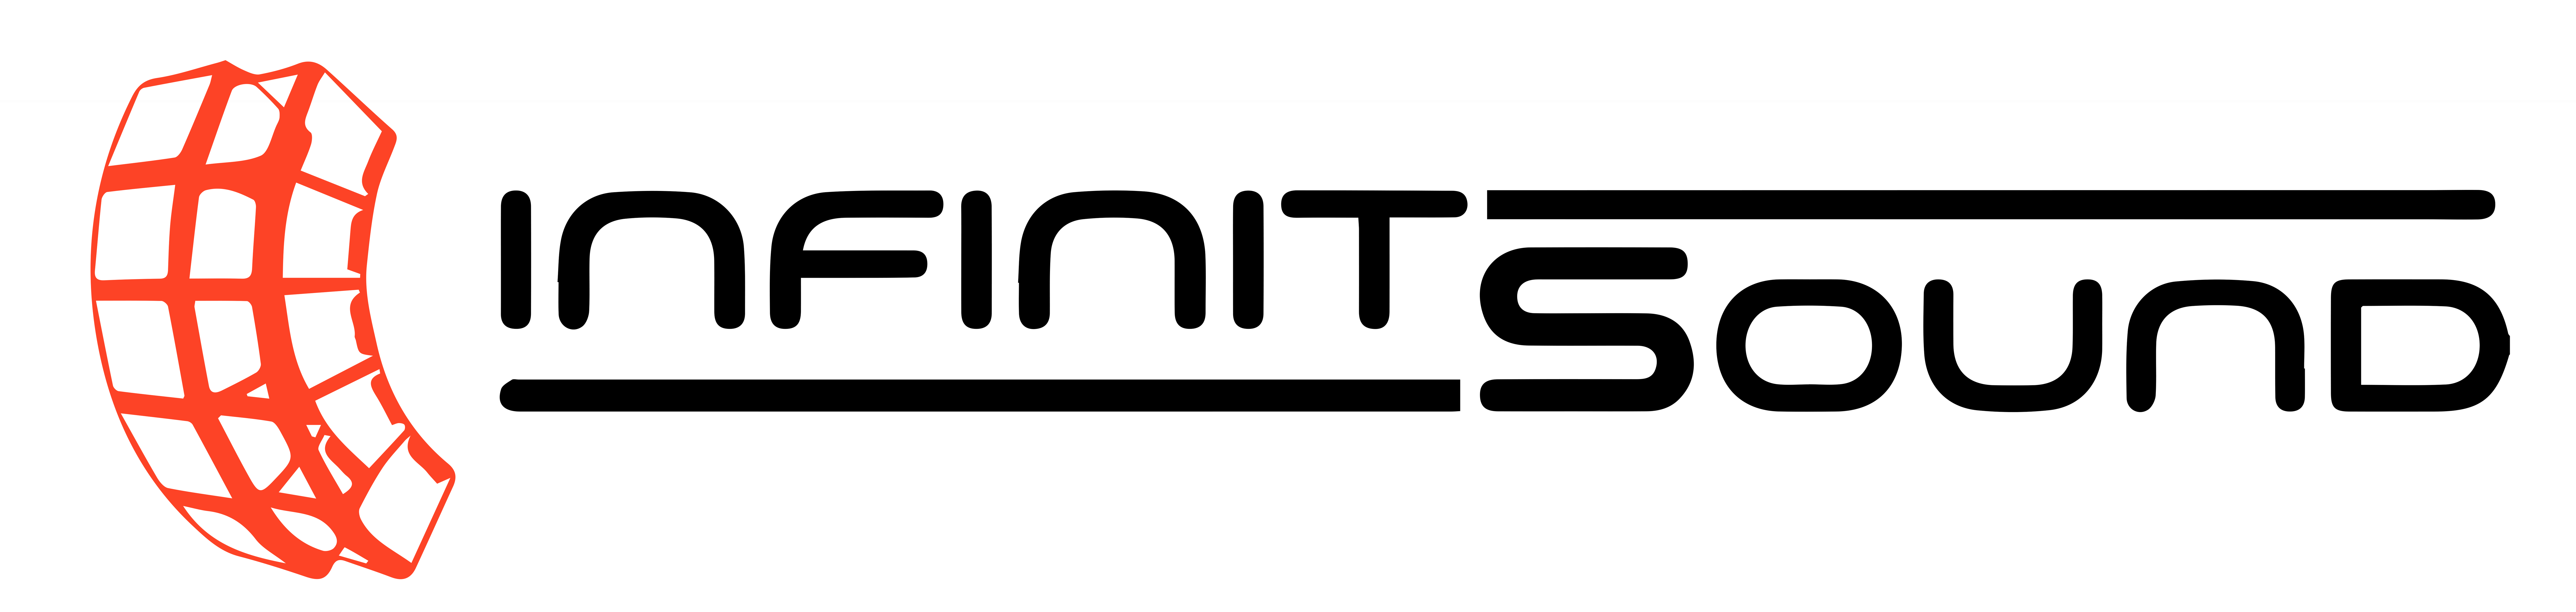 Infinit-Sound-logo-2016 VECTOR VESION